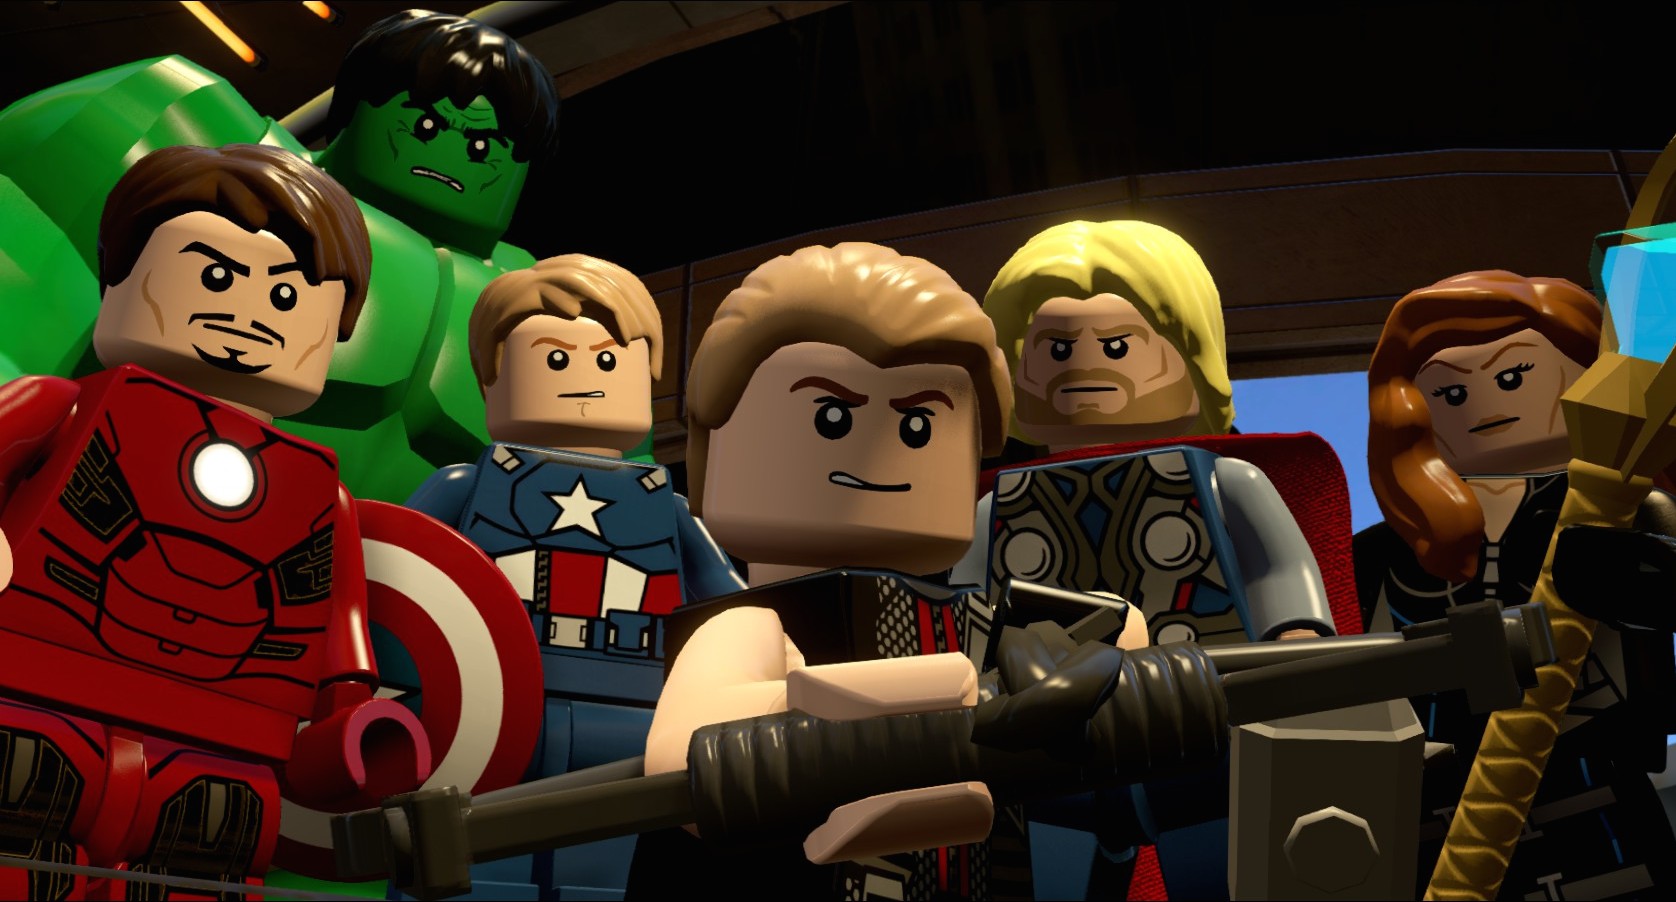 LEGO® Marvel's Avengers